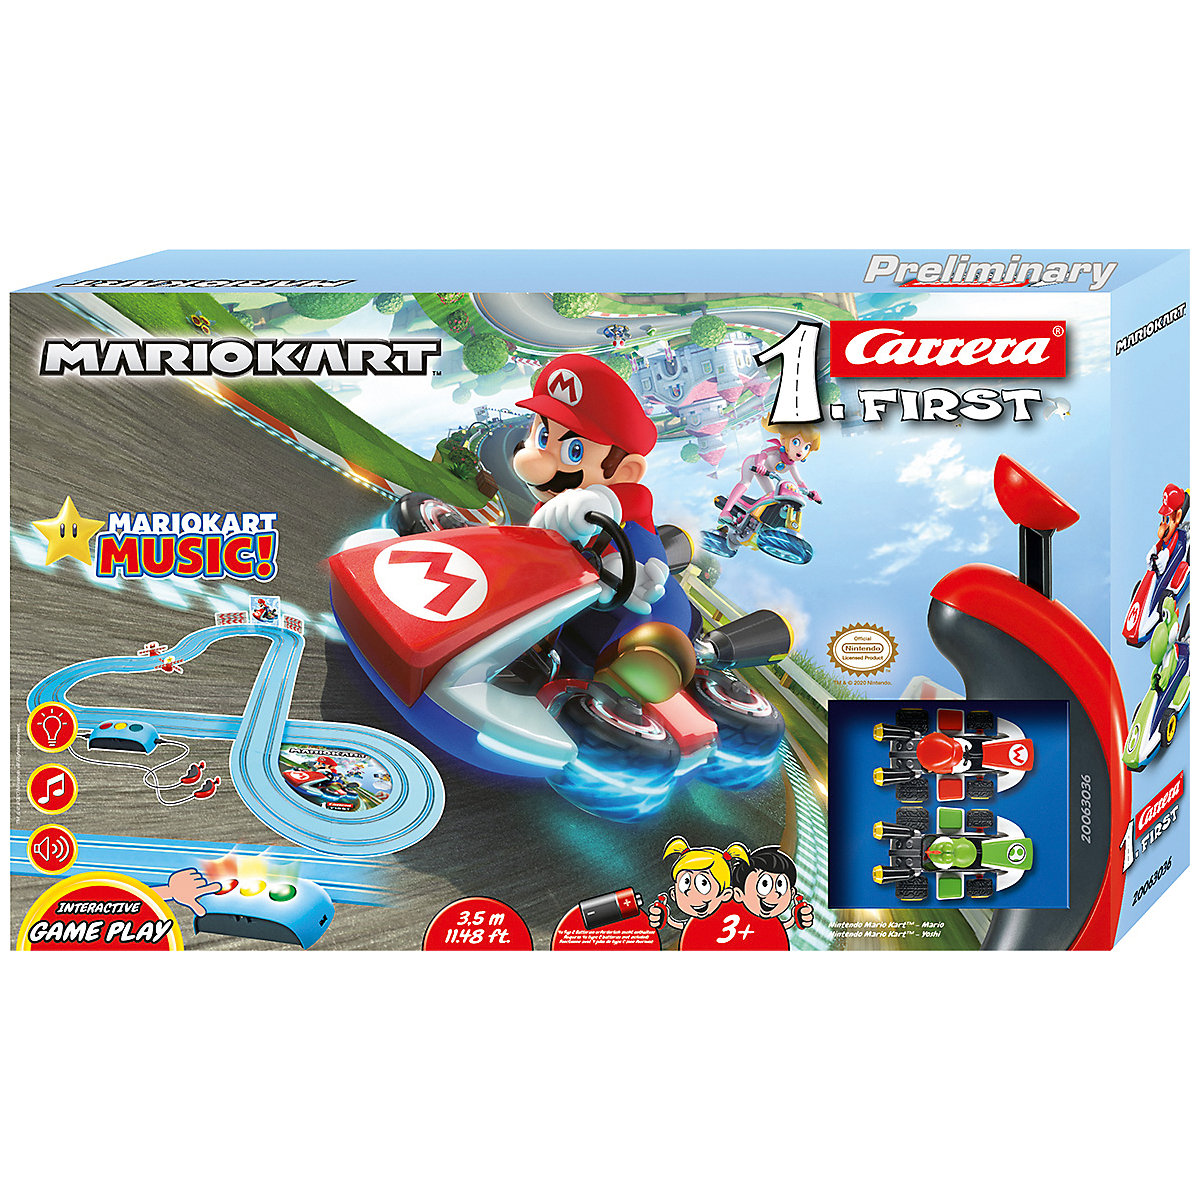 CARRERA FIRST Nintendo Mario Kart Royal Raceway Autorennbahn für Kinder ab 3 Jahren mit Mario und Yoshi mit interaktiven Spielfunktionen Musik Sound- und Lichteffekten